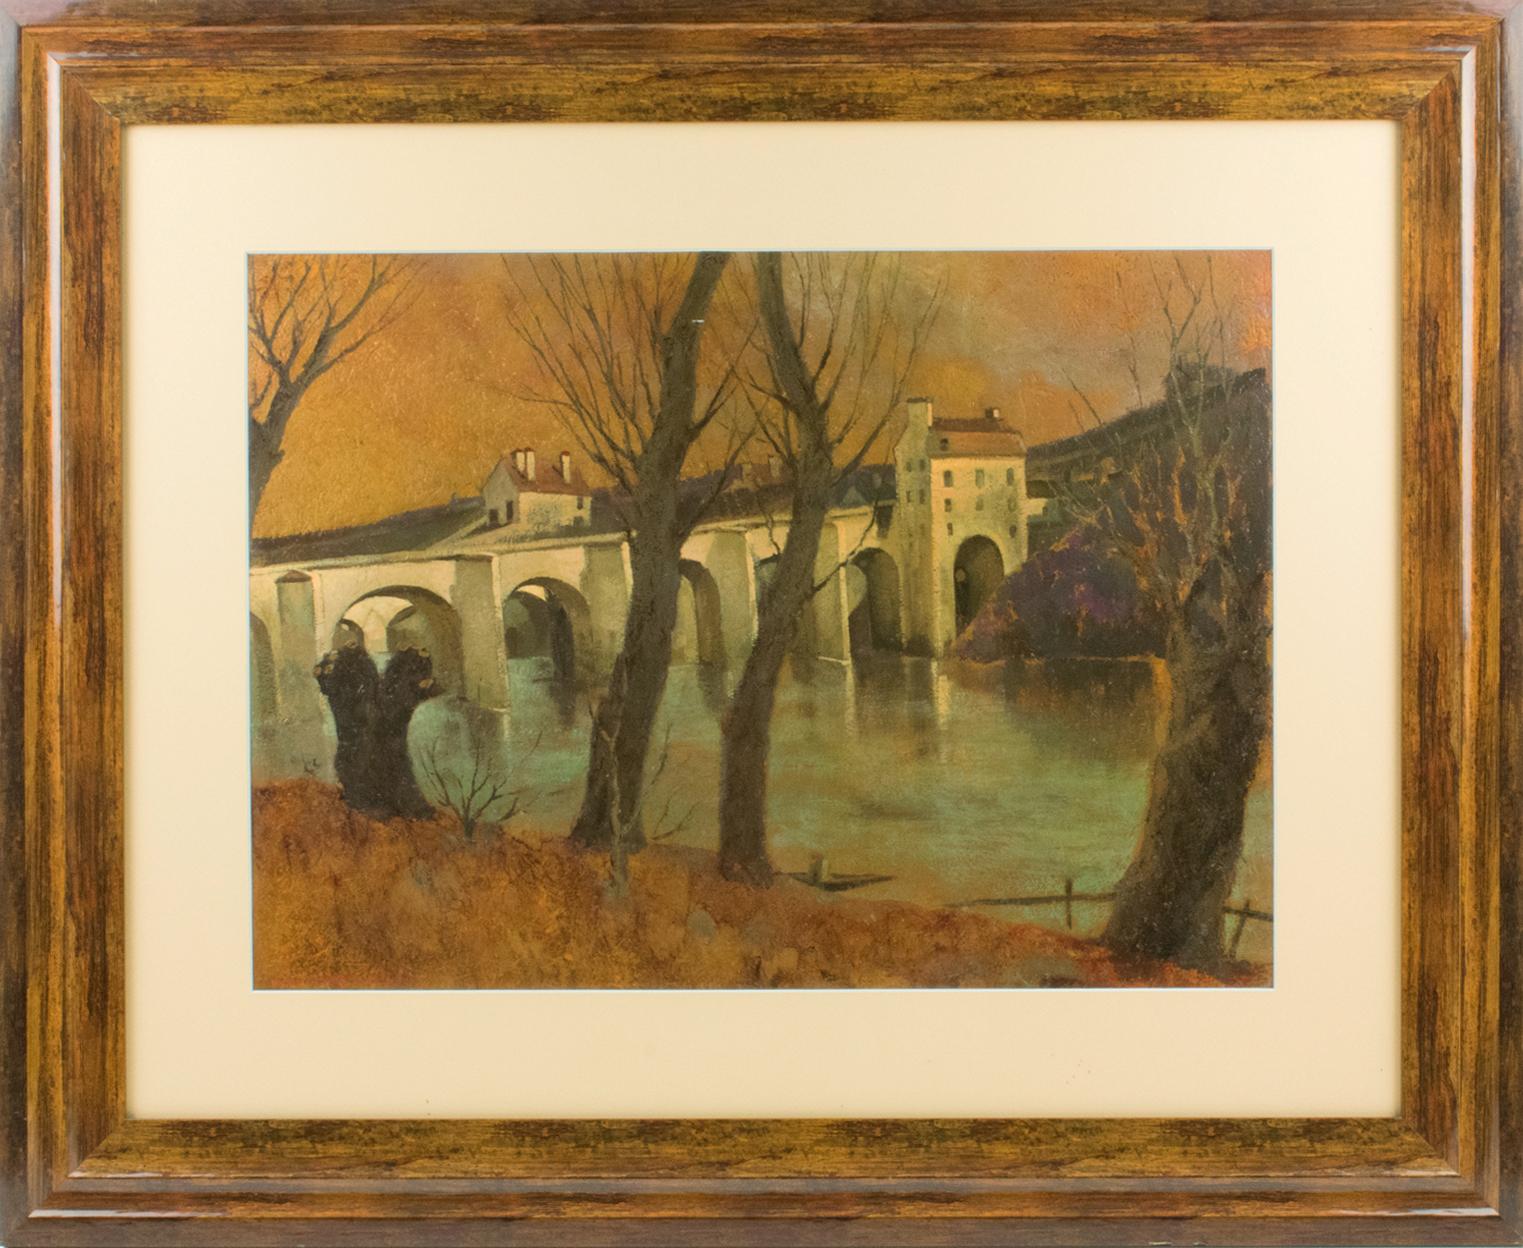 Vincent Mazzocchini (France, 20e siècle) a créé ce paysage français unique à l'huile sur panneau de bois pressé. 
Cette charmante composition est réalisée sur un support plutôt inhabituel. Le paysage représente un vieux pont voûté du Moyen Âge en